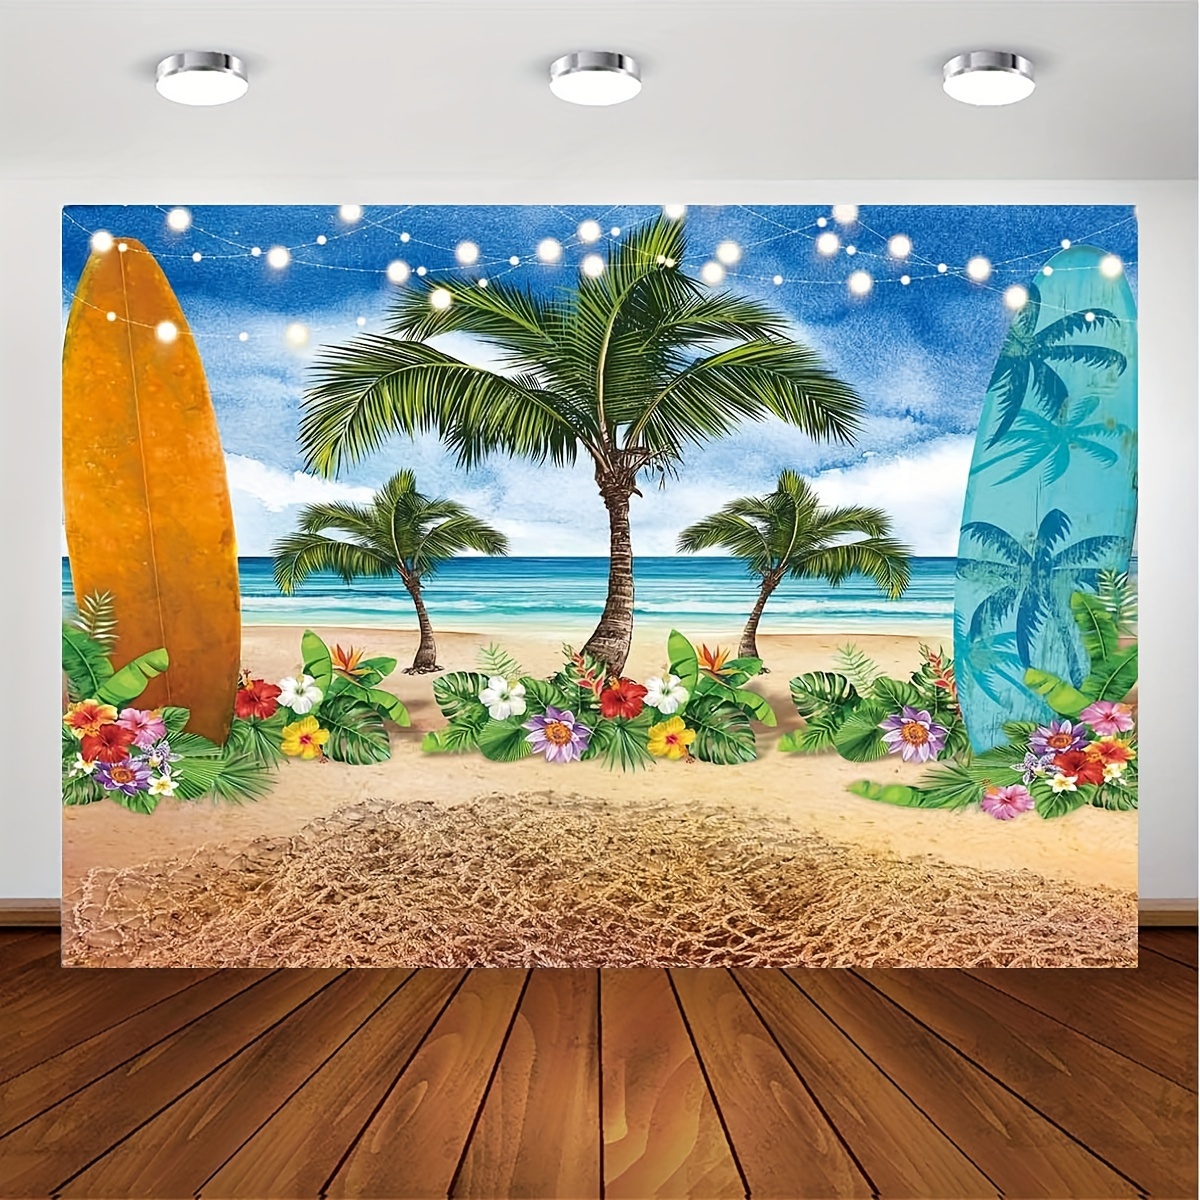  Luau - Decoraciones de fiesta tropical, 129 piezas de  suministros de fiesta hawaiana que incluyen falda de mesa de hierba, hojas  de palma, globos de fiesta para playa, verano, decoración de